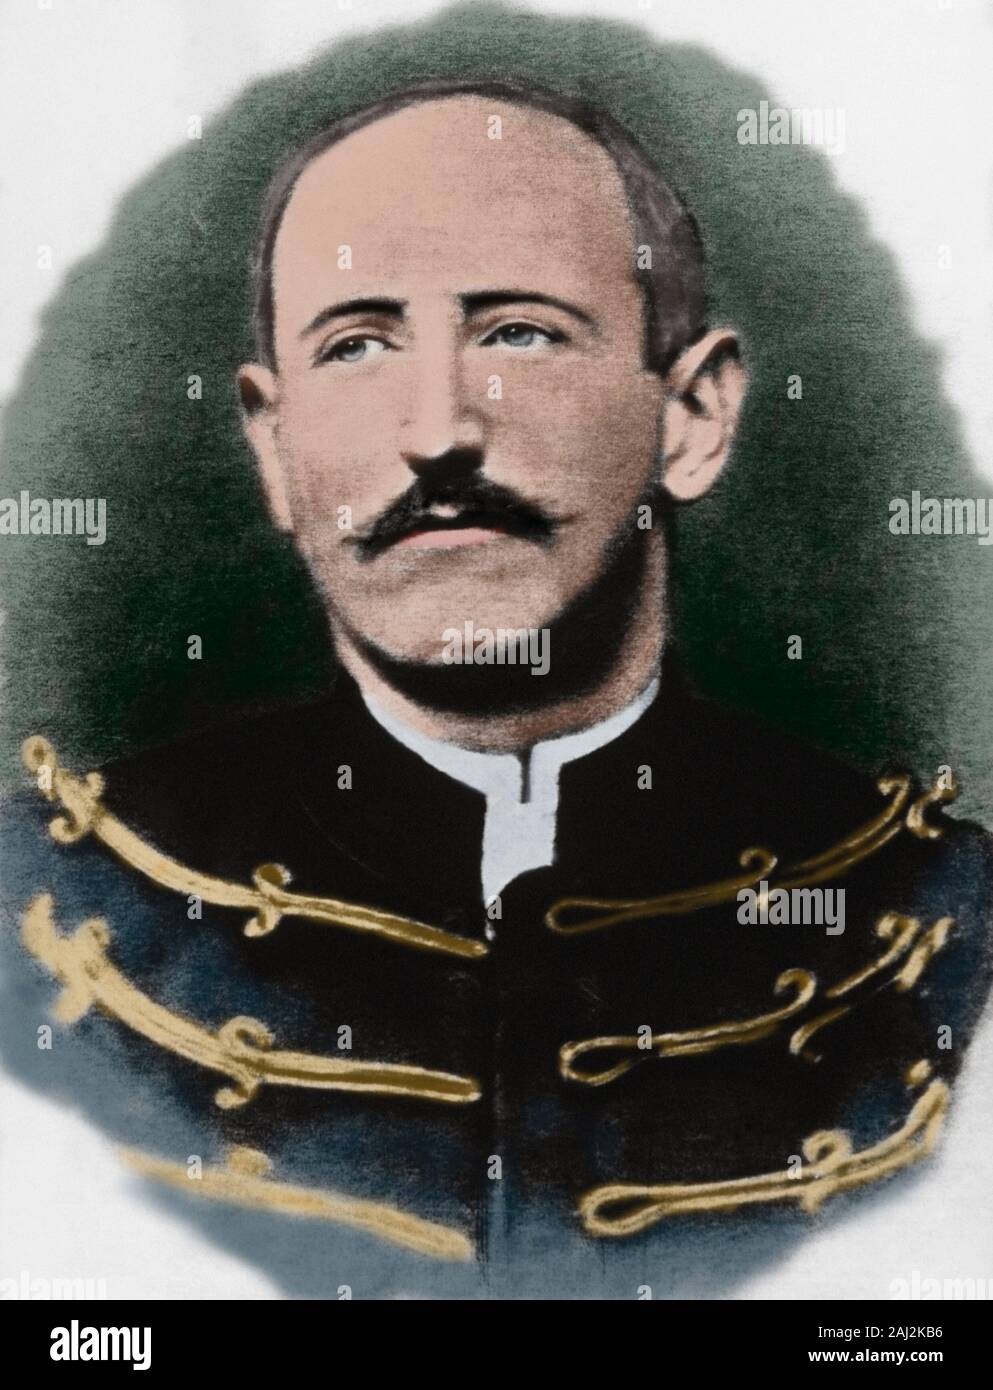 Alfred Dreyfus (1859-1935). Der französische Offizier. Er wurde nach dem Krieg Ministerium zugewiesen, wenn, im Jahr 1894, der Verkauf von militärische Geheimnisse an das Deutsche Militär beschuldigt wurde. Fotografie kurz nach seiner Degradierung. Später Färbung. Stockfoto